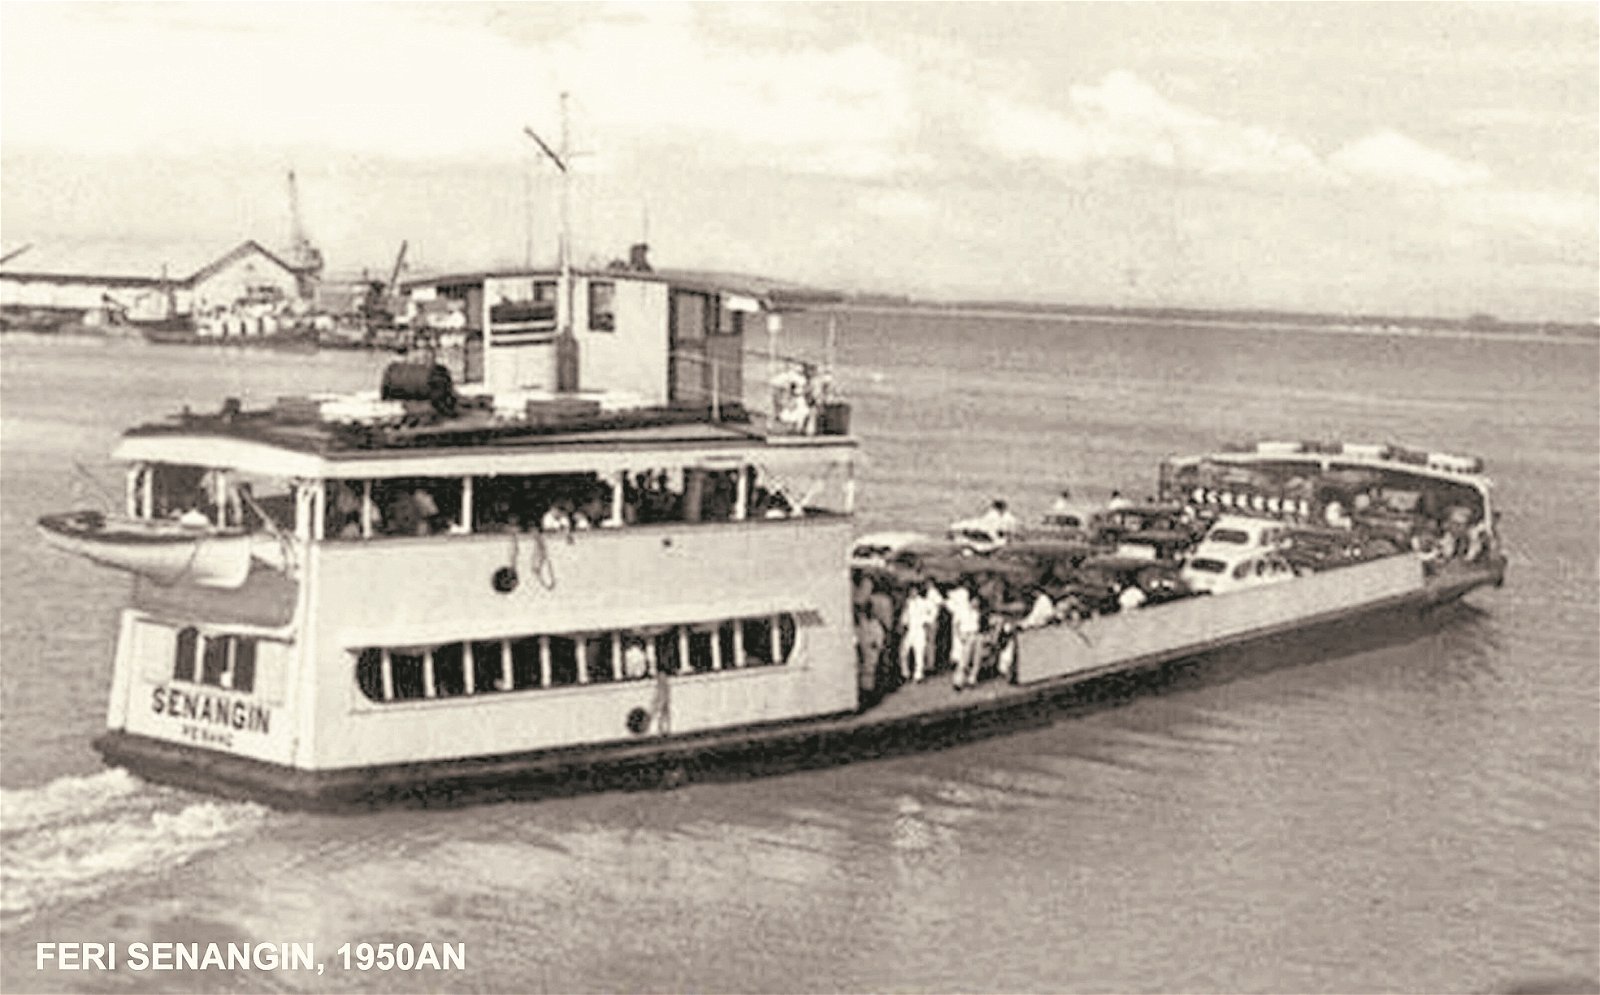 二战后，英军重返槟城，但由于大部分渡轮已遭日军摧毁，因此，英军把4艘军事登陆艇改装成载客渡轮，其中一艘就被命名为“Senangin”。